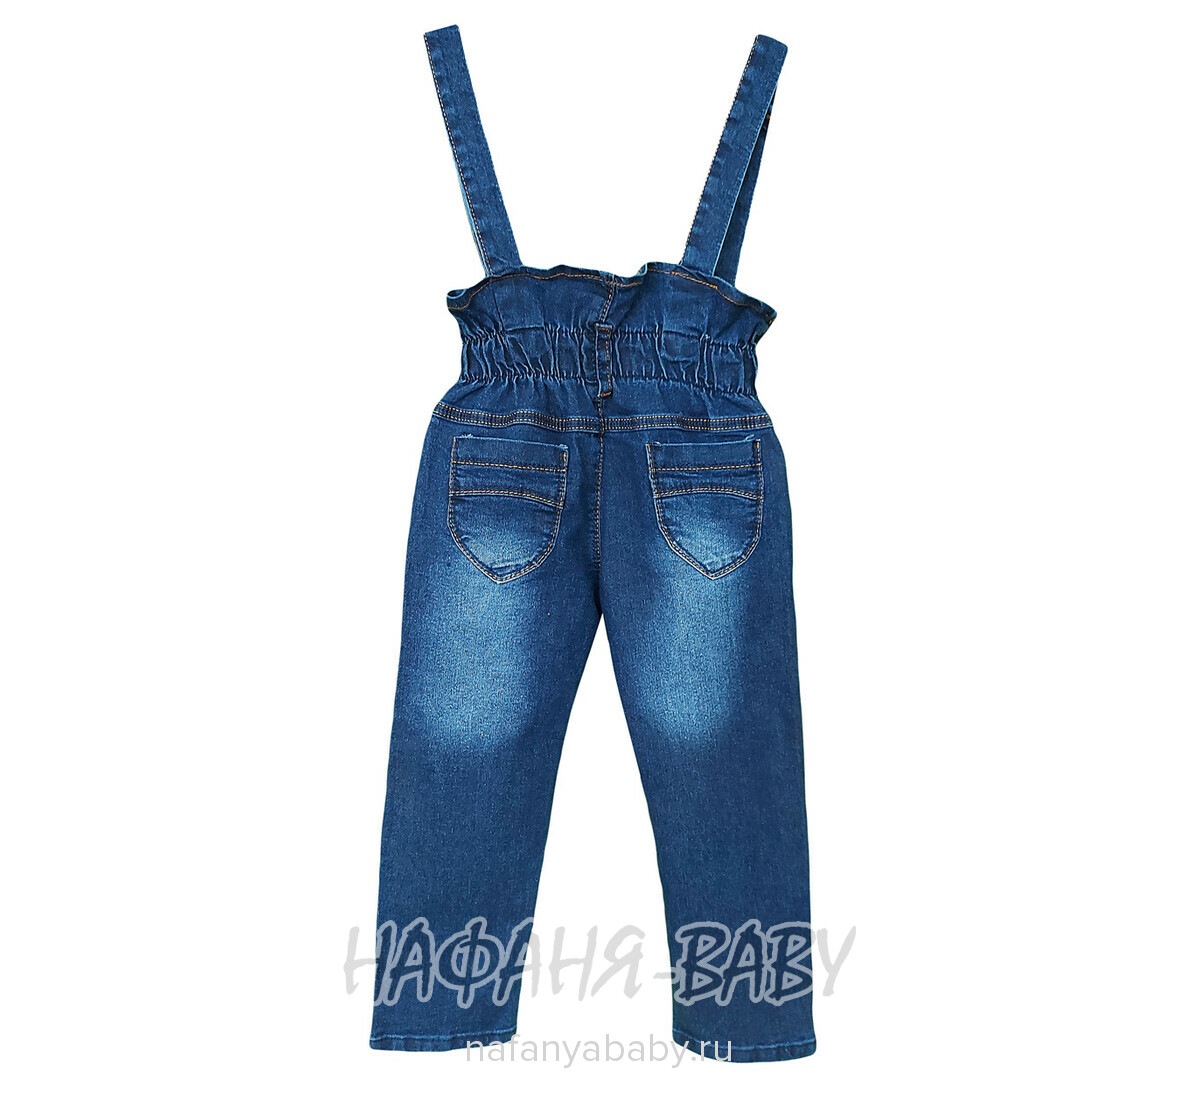 Детские джинсы TATI Jeans арт: 8224 для девочки от 3 до 7 лет, цвет синий, оптом Турция